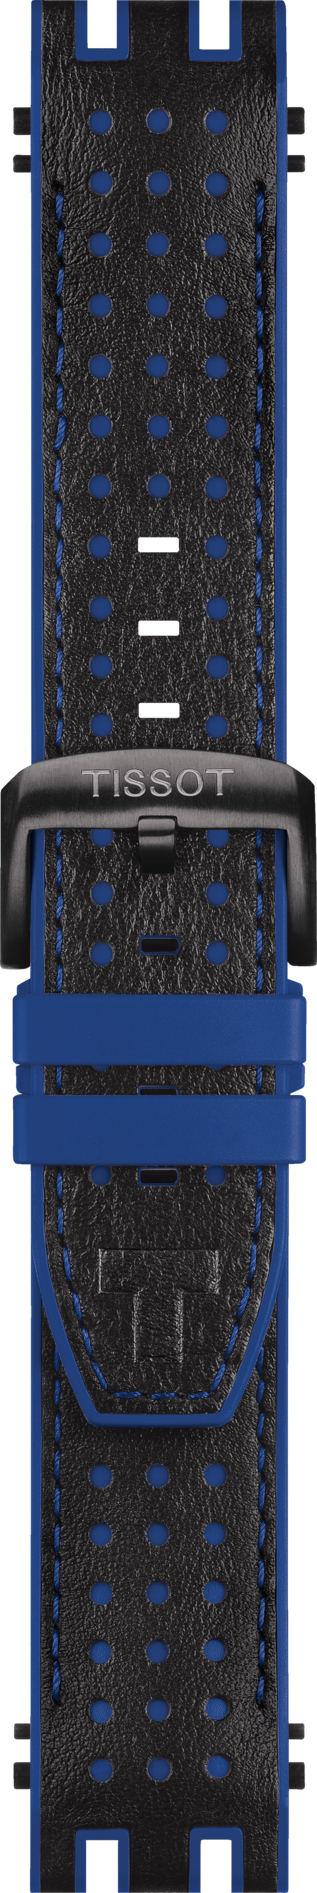 Tissot T-Race T115417 Black / Blue Rubber Watch Band Strap - WATCHBAND EXPERT